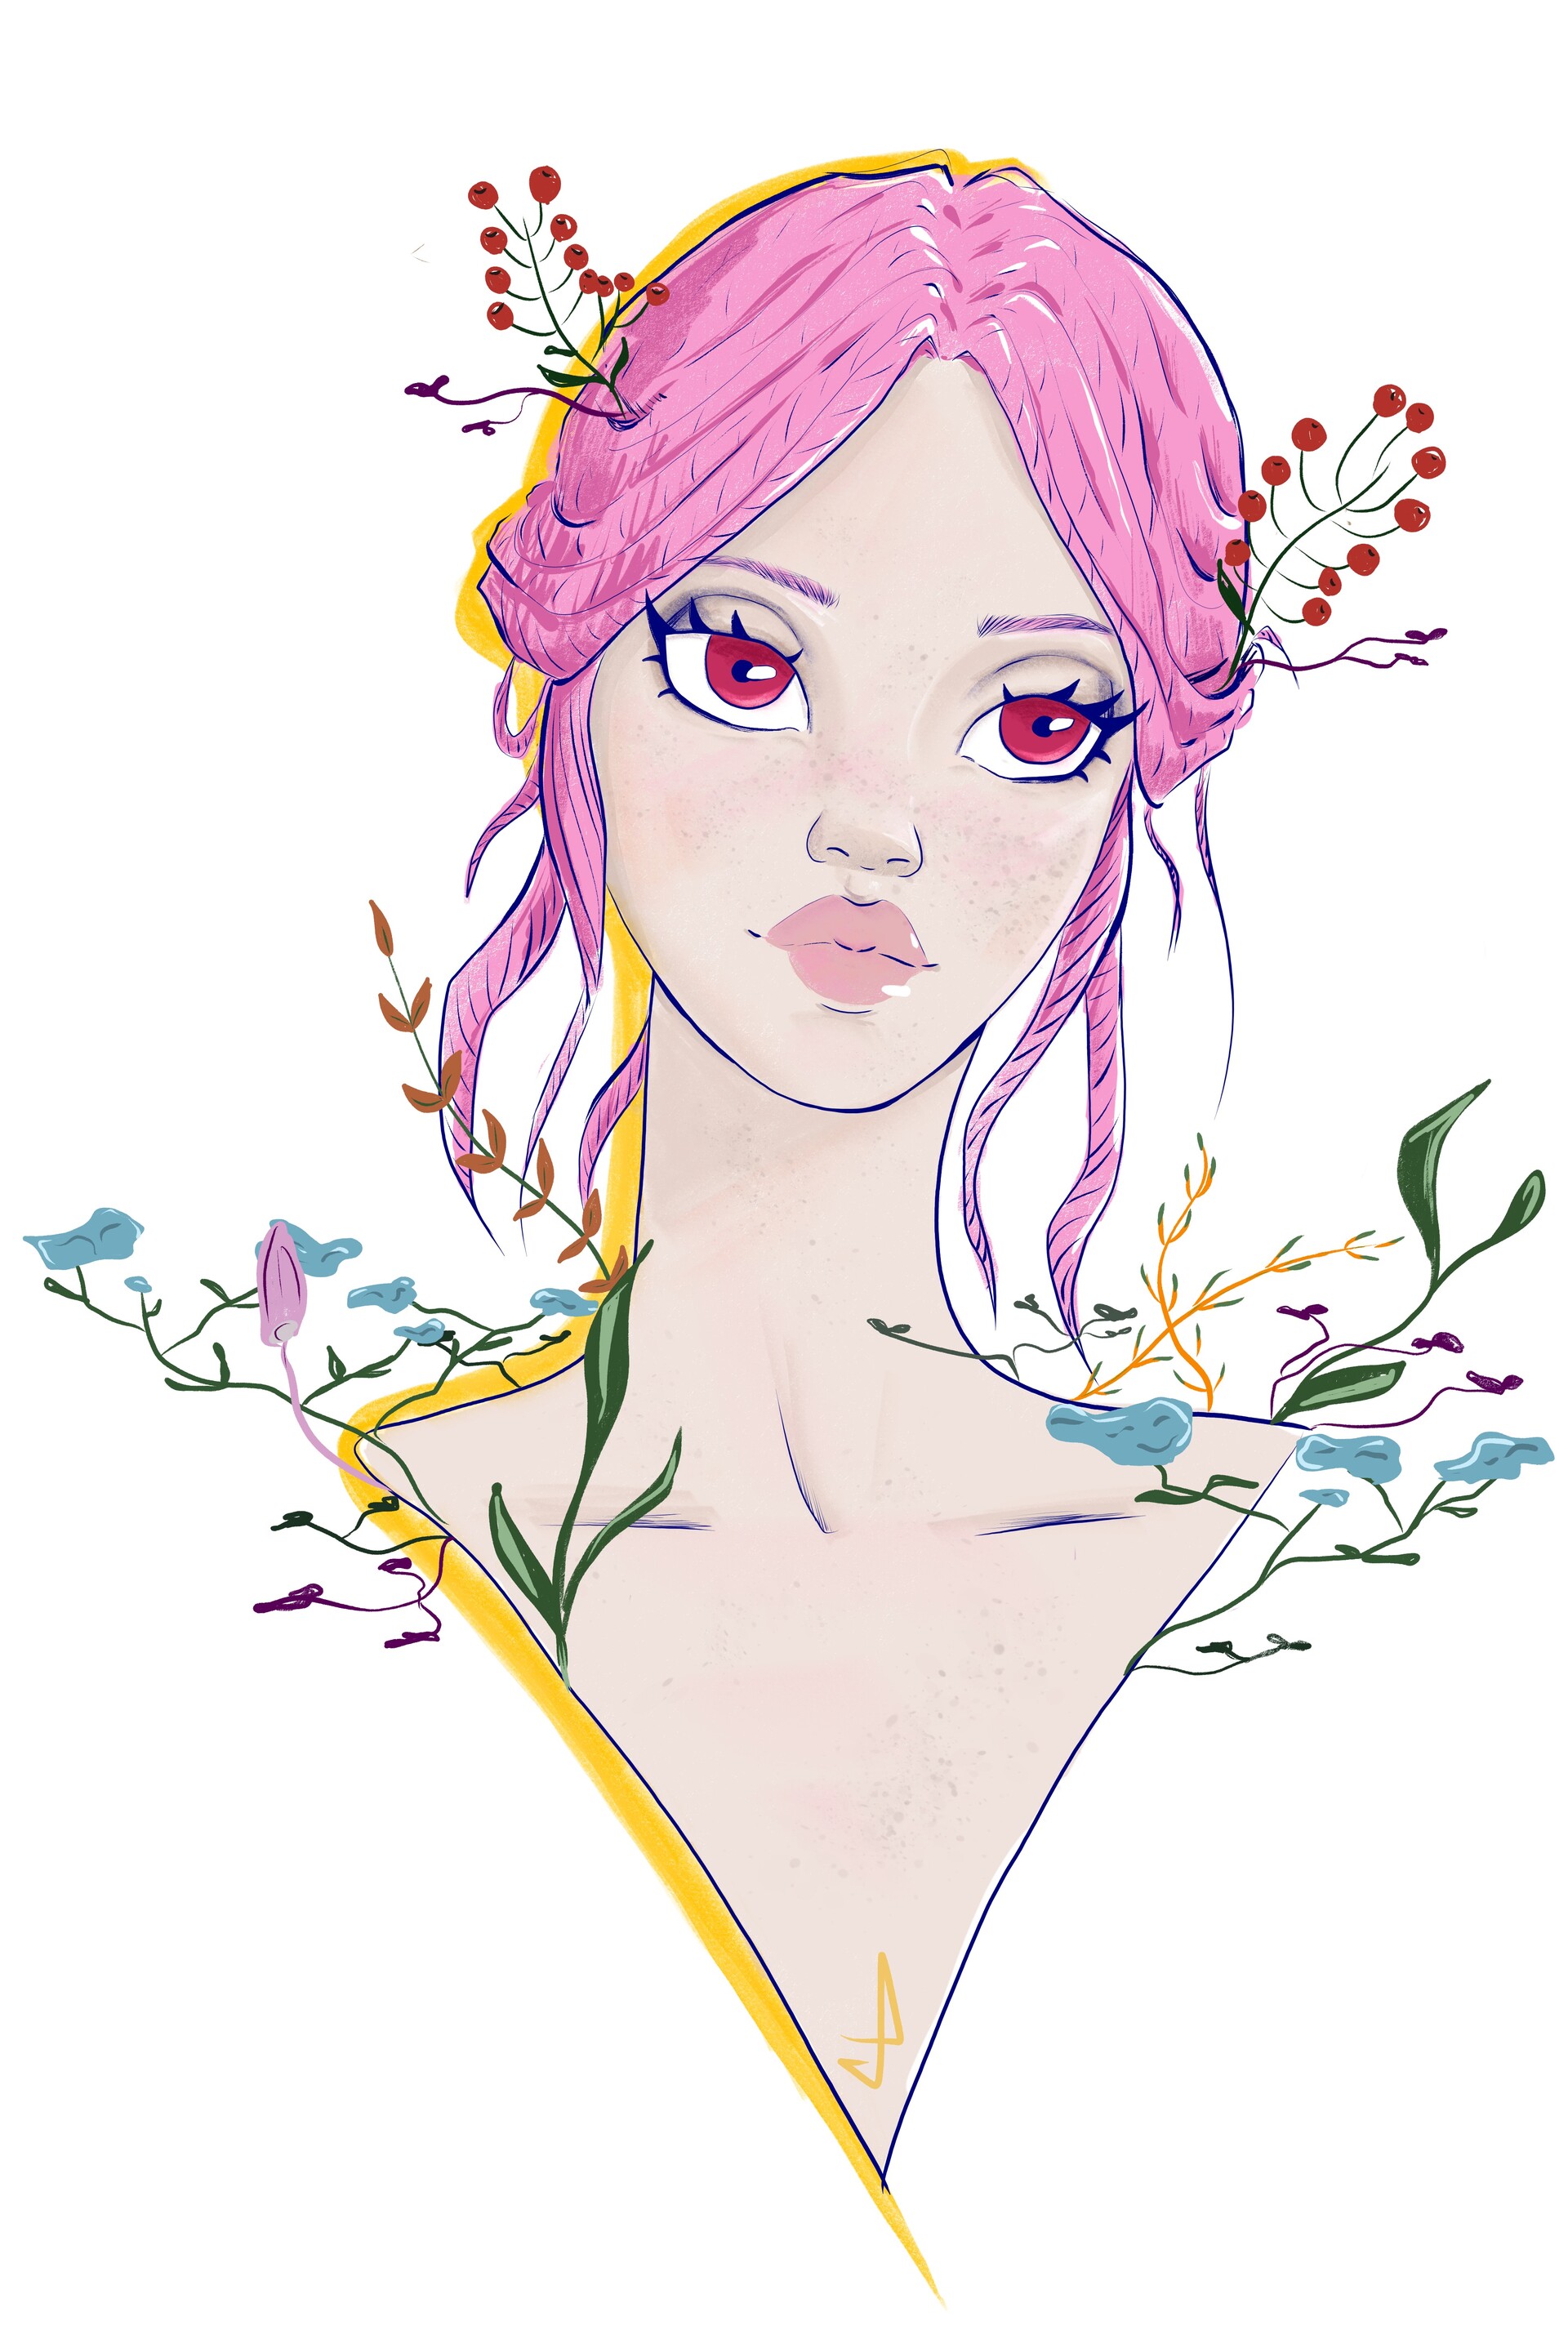 ArtStation - Flower girl